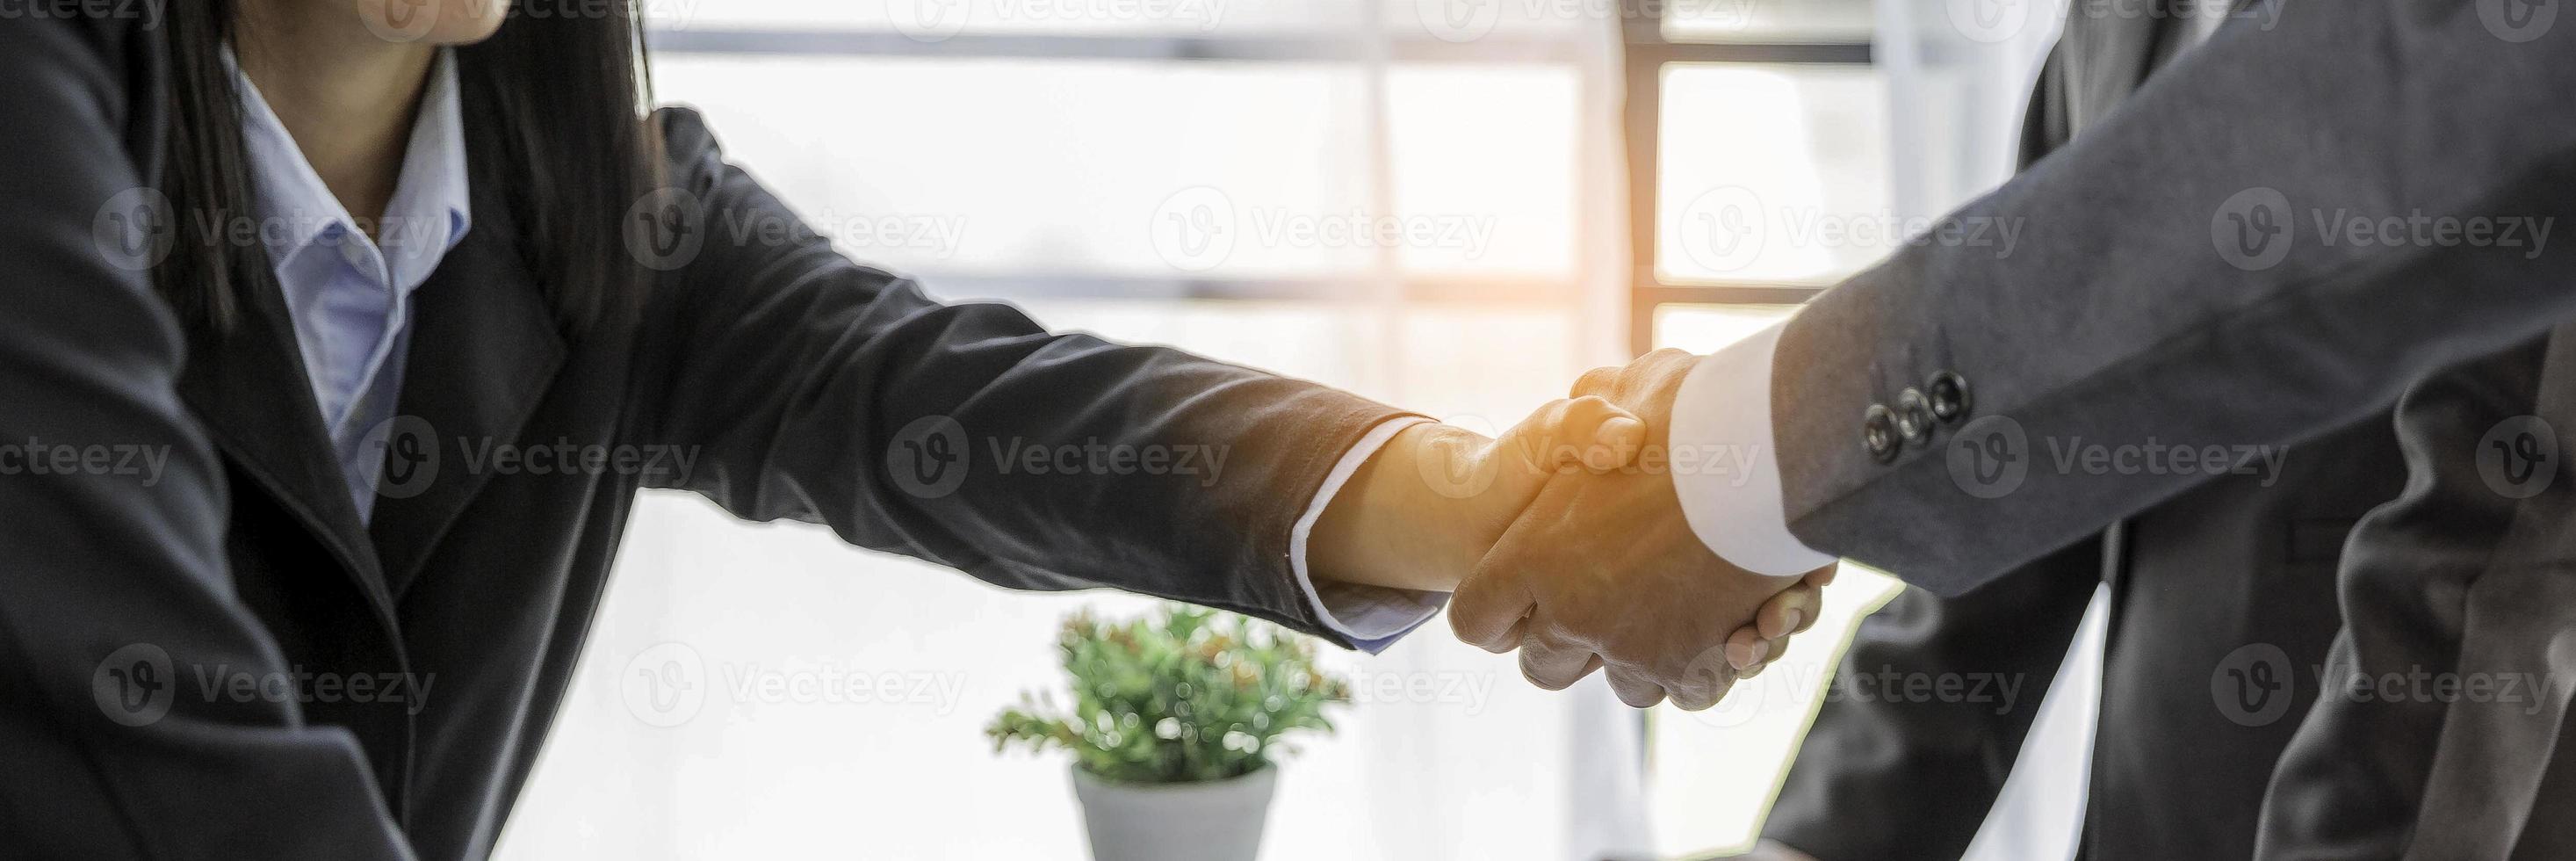 homme d'affaires professionnel et partenaires de femme d'affaires se serrant la main avec un accord et un accord de réussite commerciale. mains travail d'équipe d'affaires poignée de main au bureau. espace de copie de bannière de partenariat photo